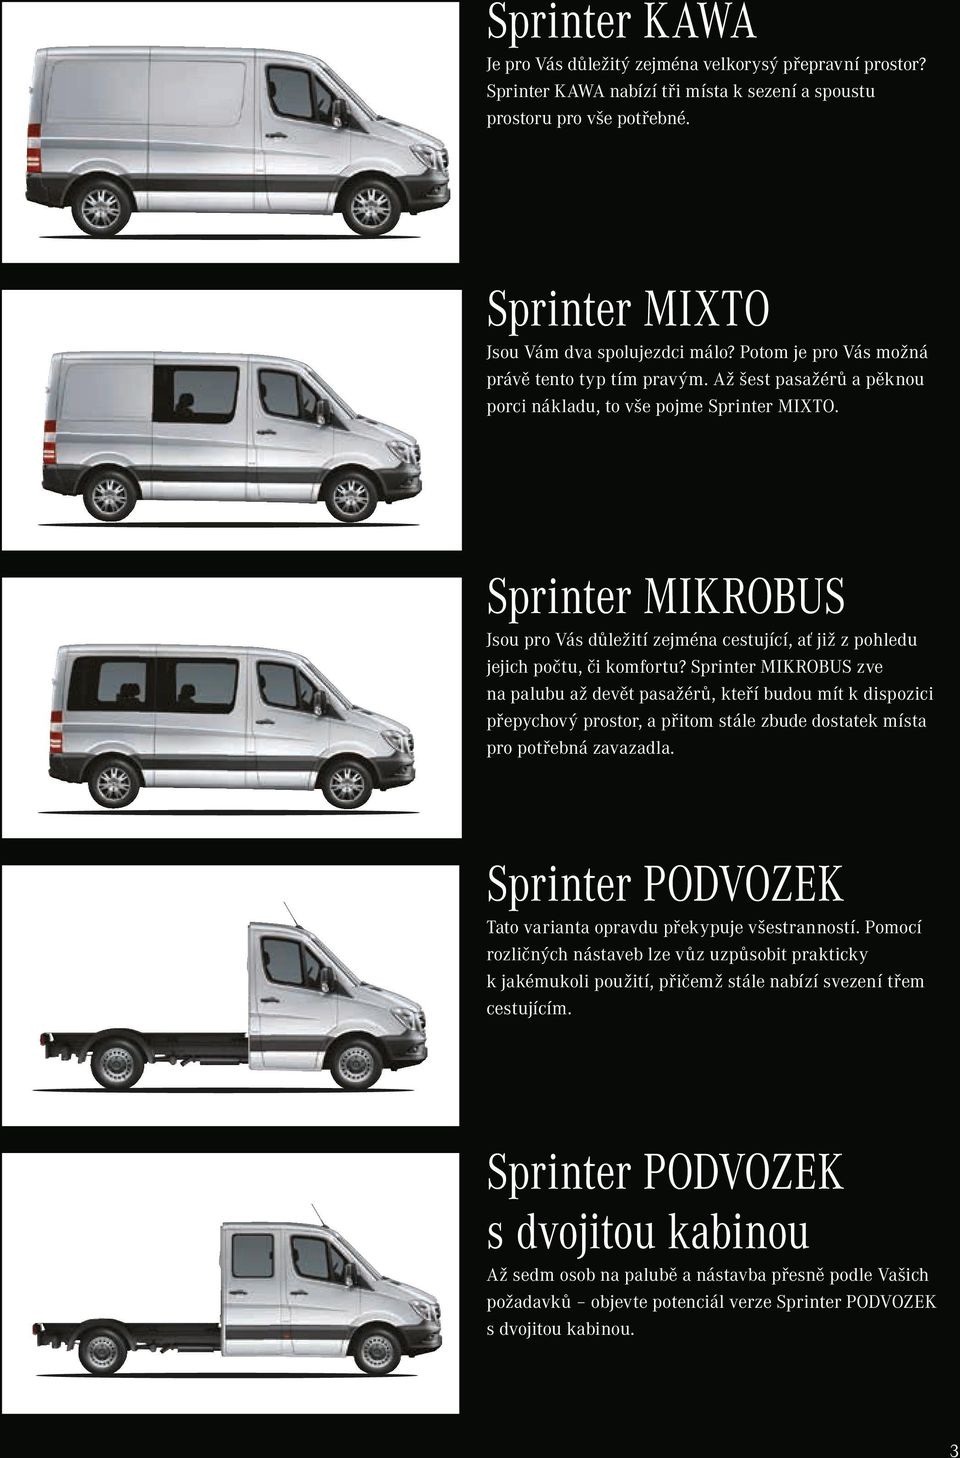 Sprinter MIKROBUS Jsou pro Vás důležití zejména cestující, ať již z pohledu jejich počtu, či komfortu?